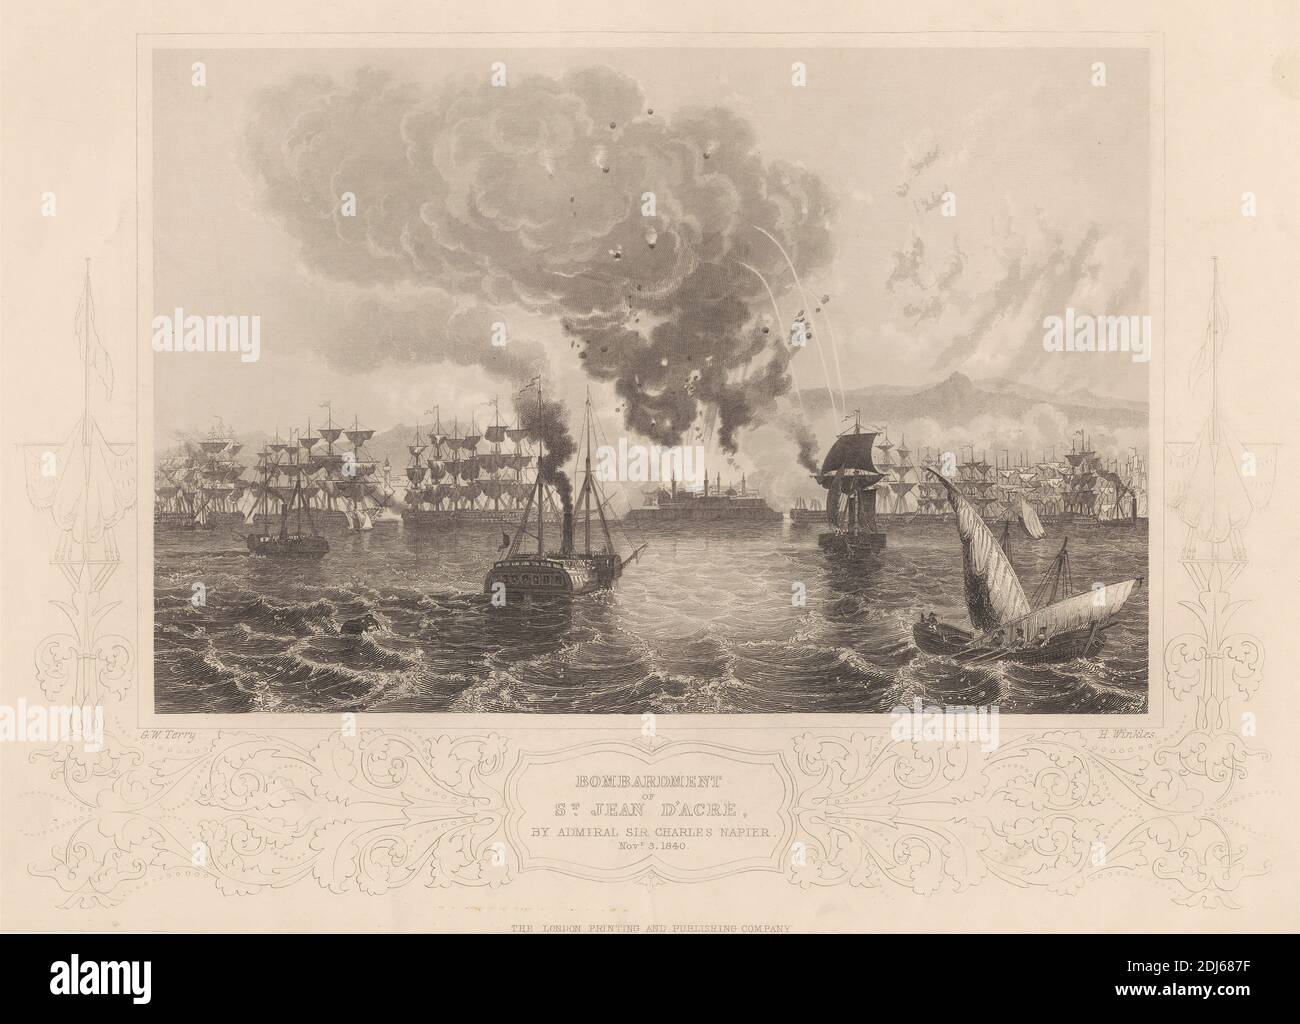 Bombardamento di St. Jean D'Acre, Stampa fatta da H. winkles, Active 1834–1840, pubblicata dalla London Printing and Publishing Company, 1840, incisione di linea su carta media, leggermente testurizzata, color crema Foto Stock